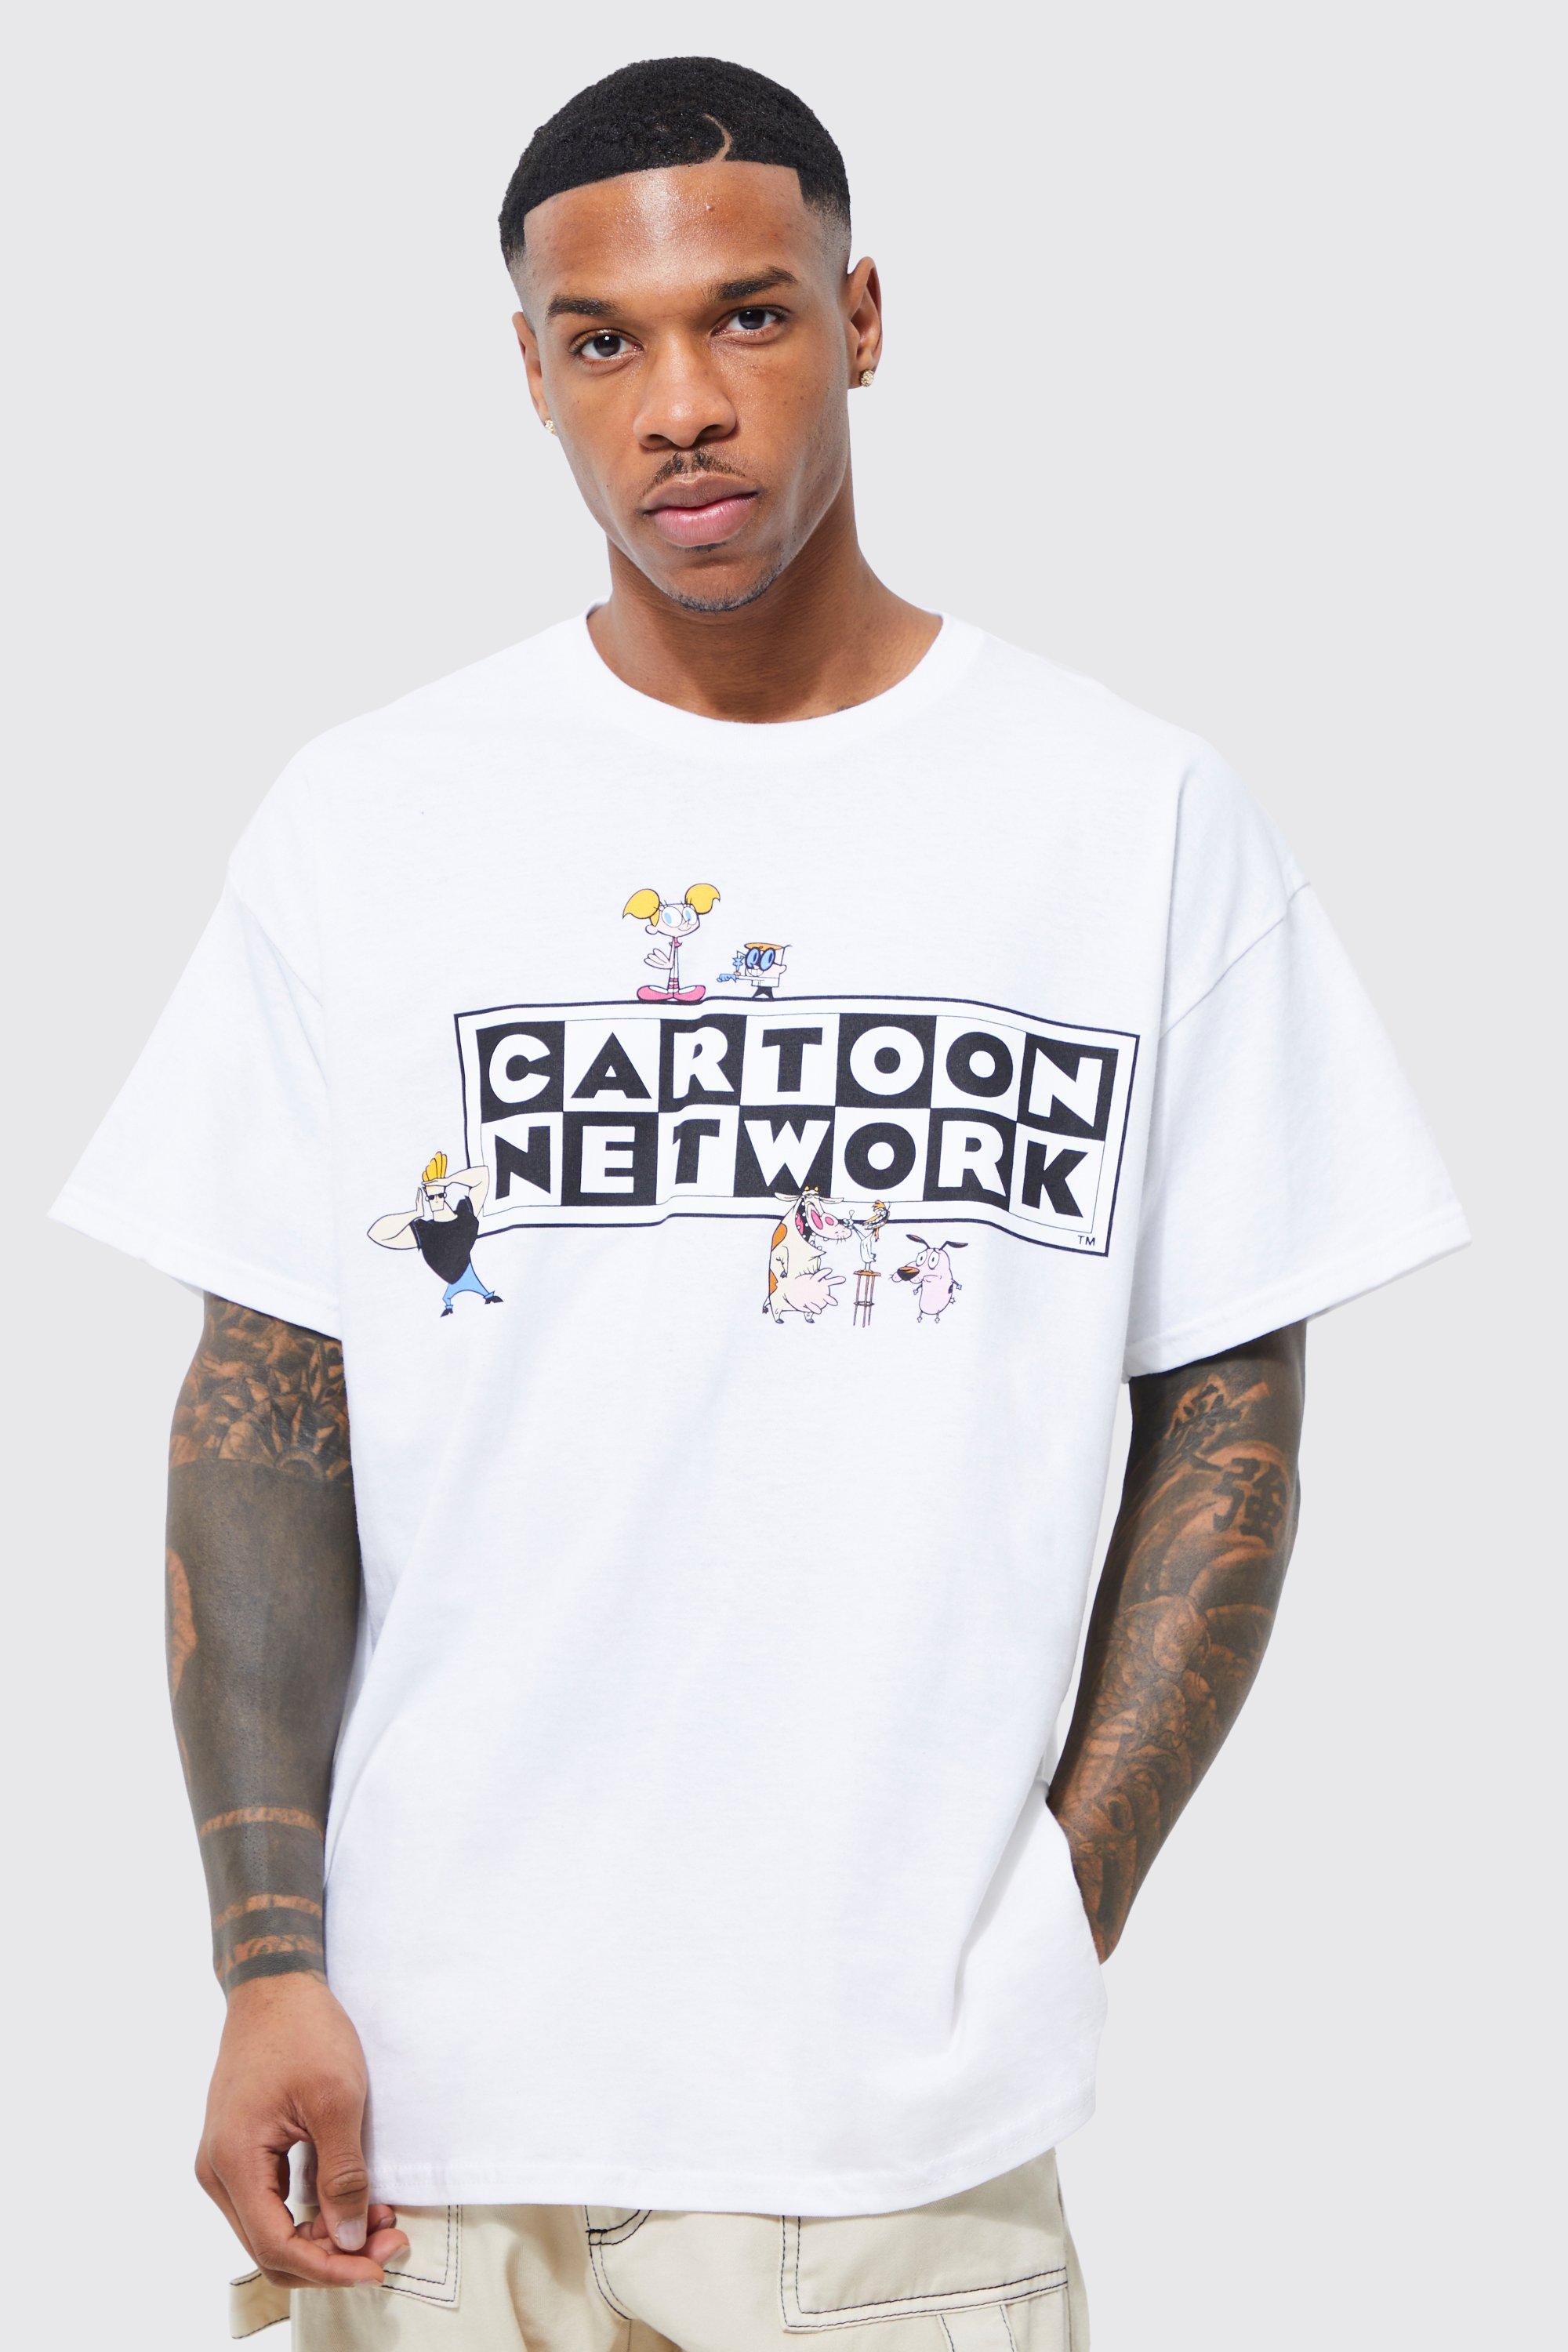 USA Network Suits You Just Got Litt Up T-Shirt